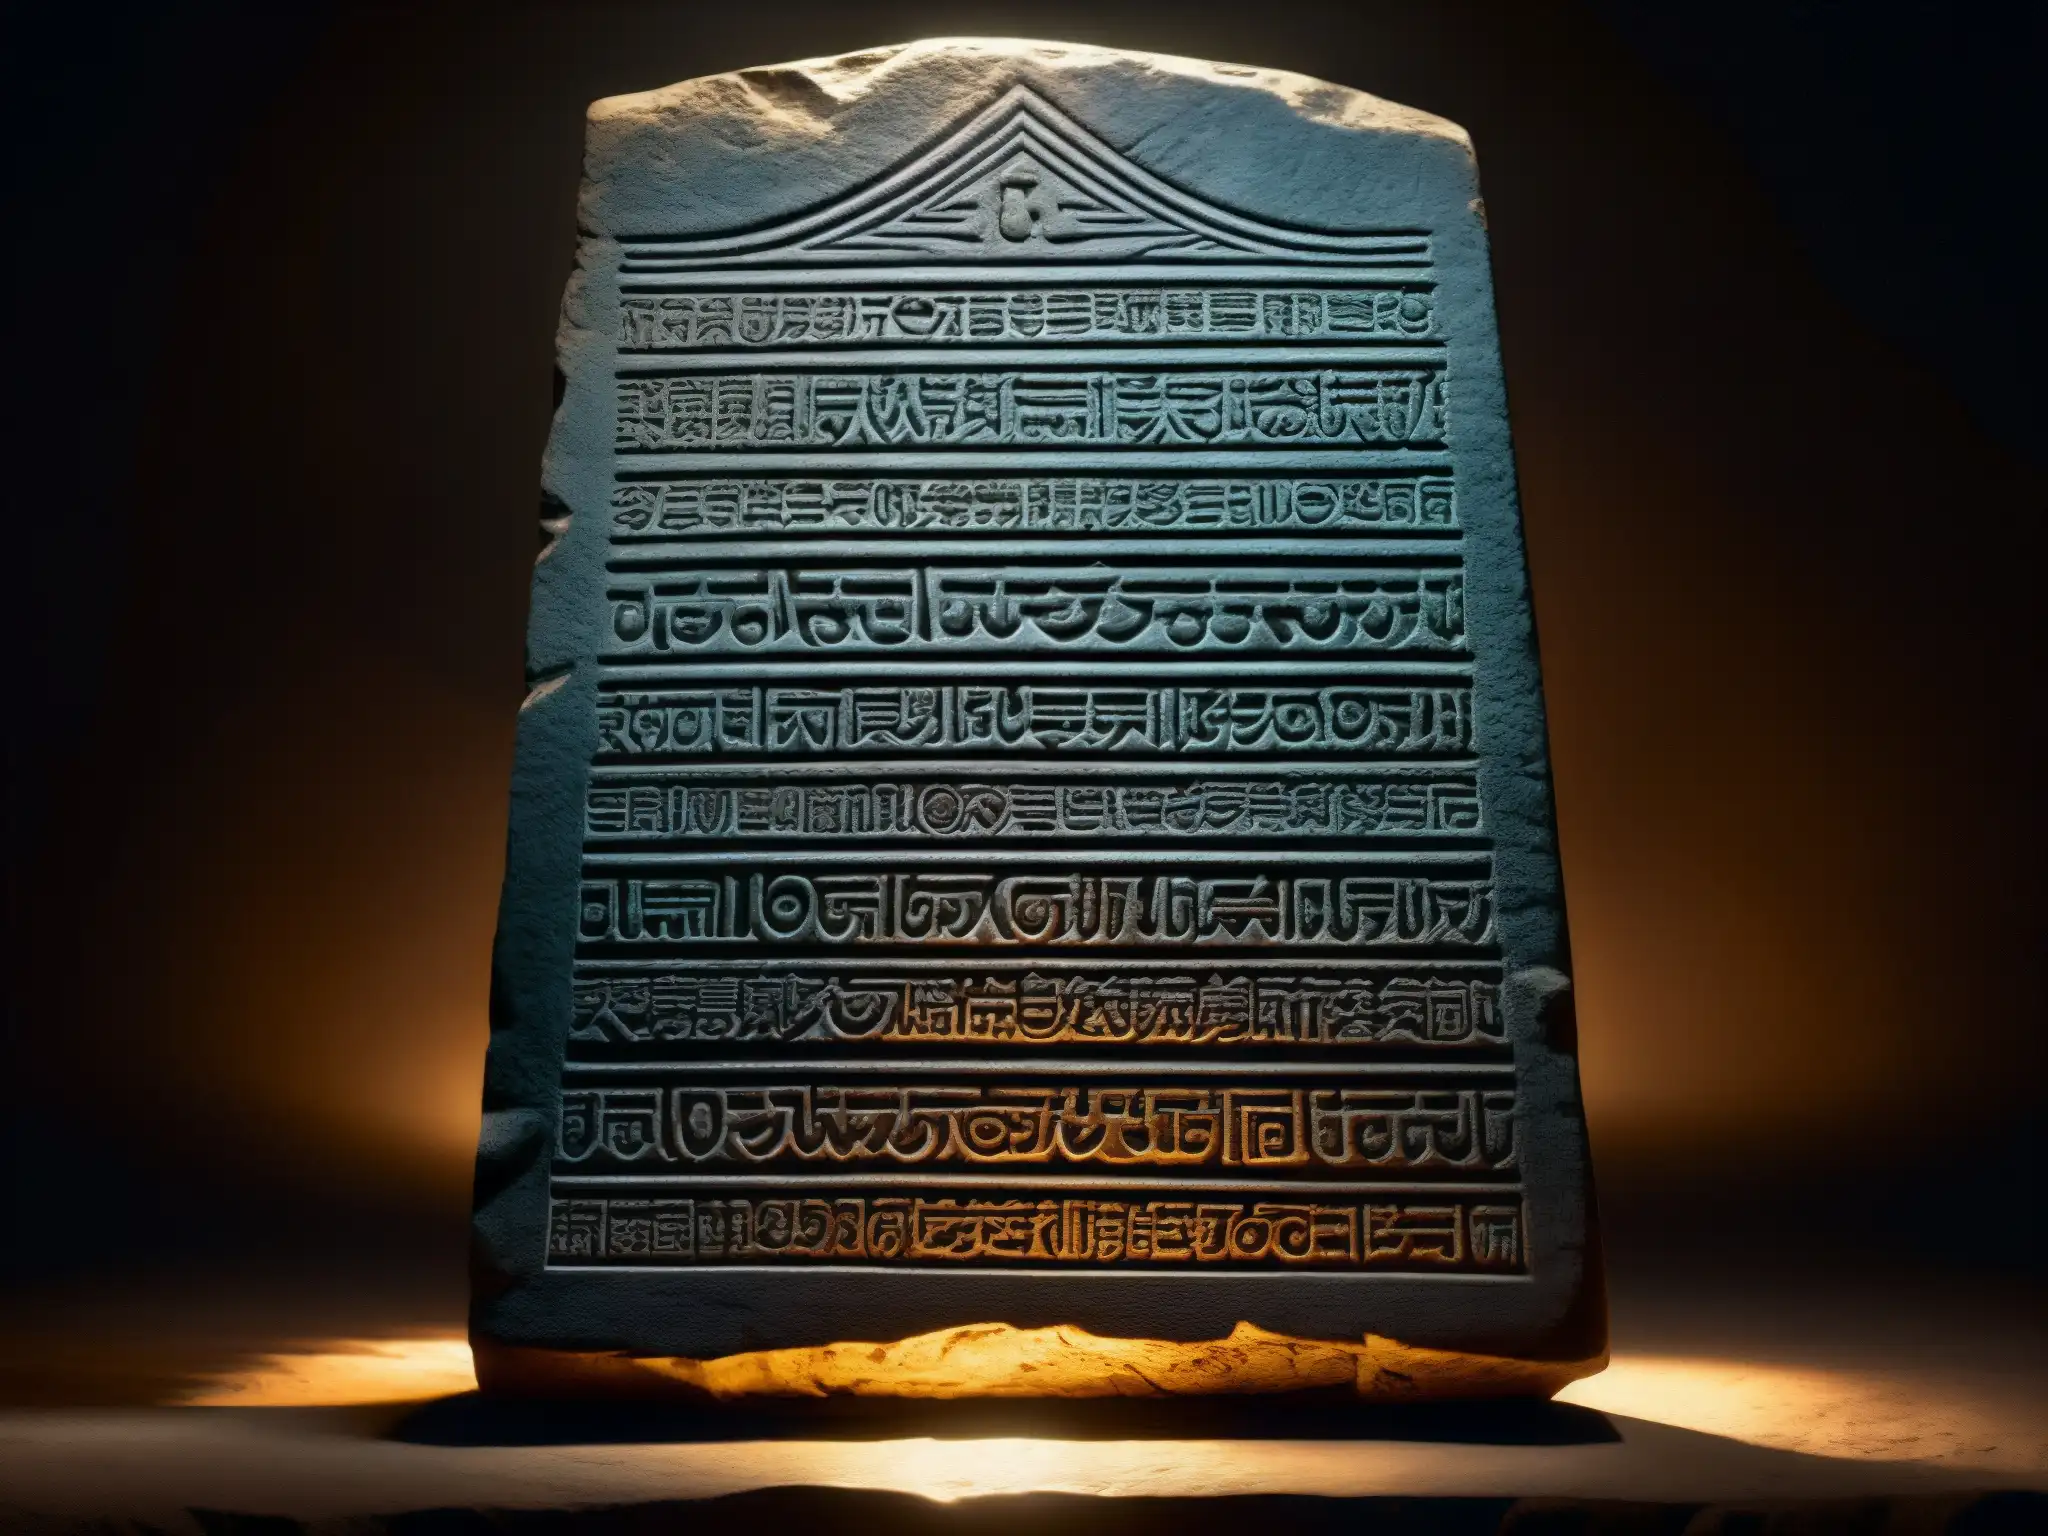 Antigua tablilla de piedra con inscripciones religiosas iluminada por un rayo de luz en una habitación oscura